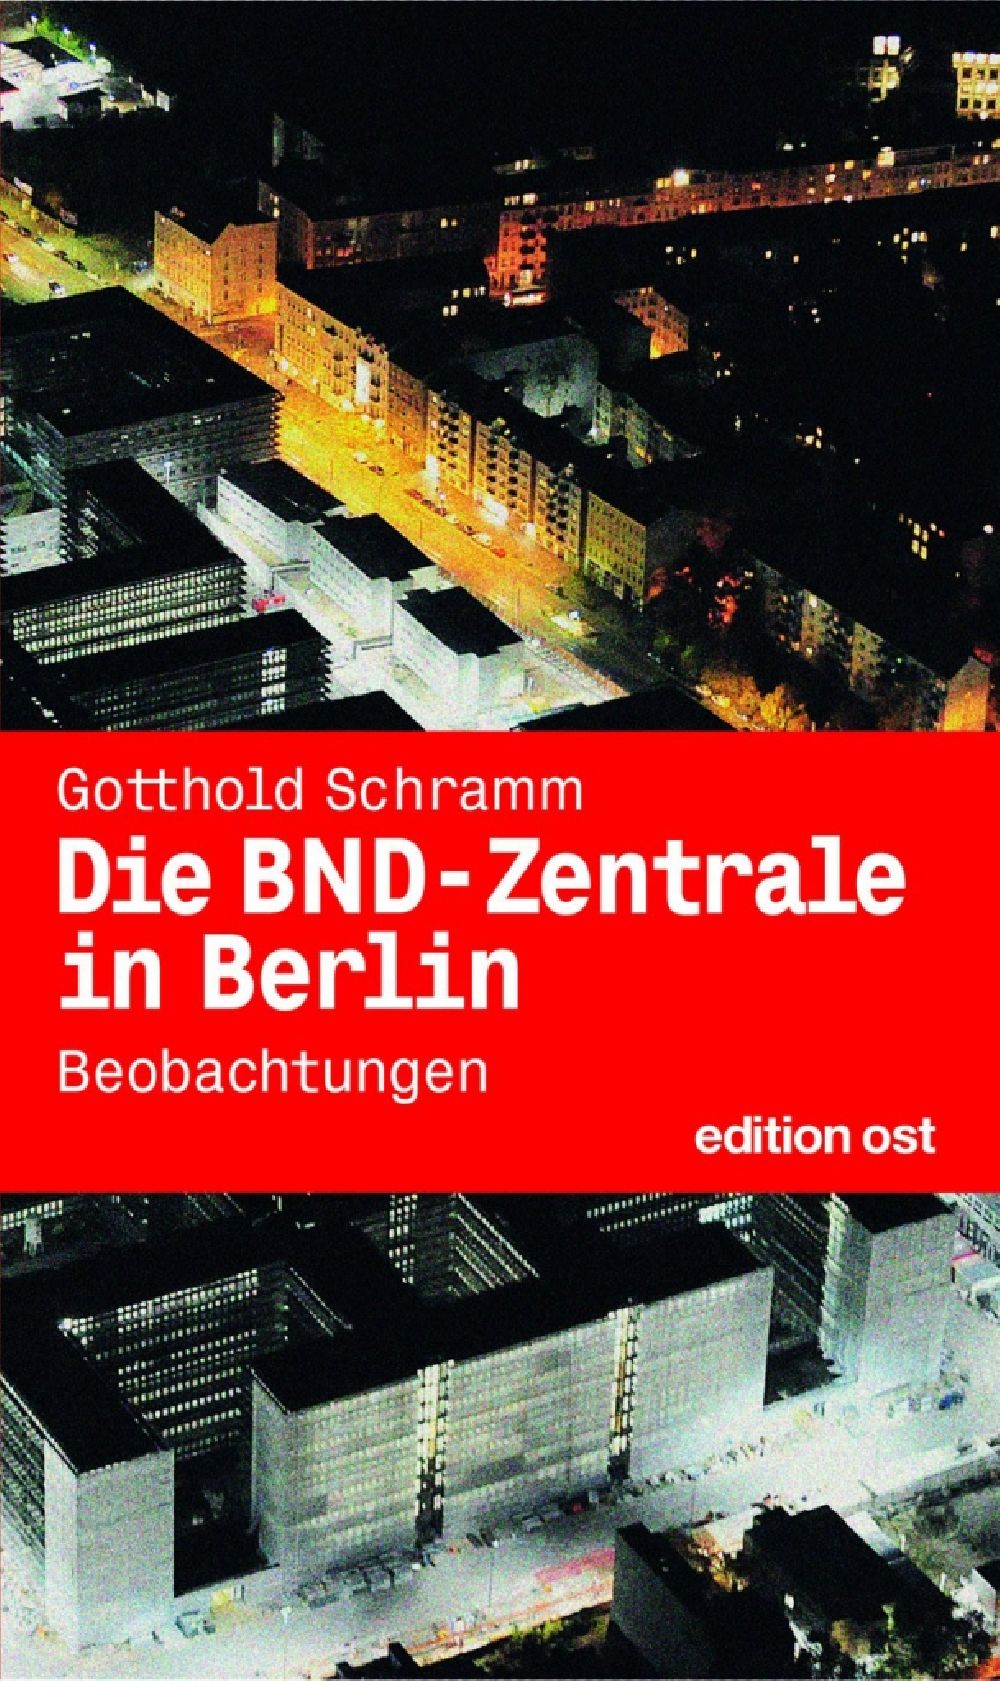 Aerial image Berlin - Die BND Zentrale in Berlin edition ost Verlag ISBN Nr.: 9783360018359